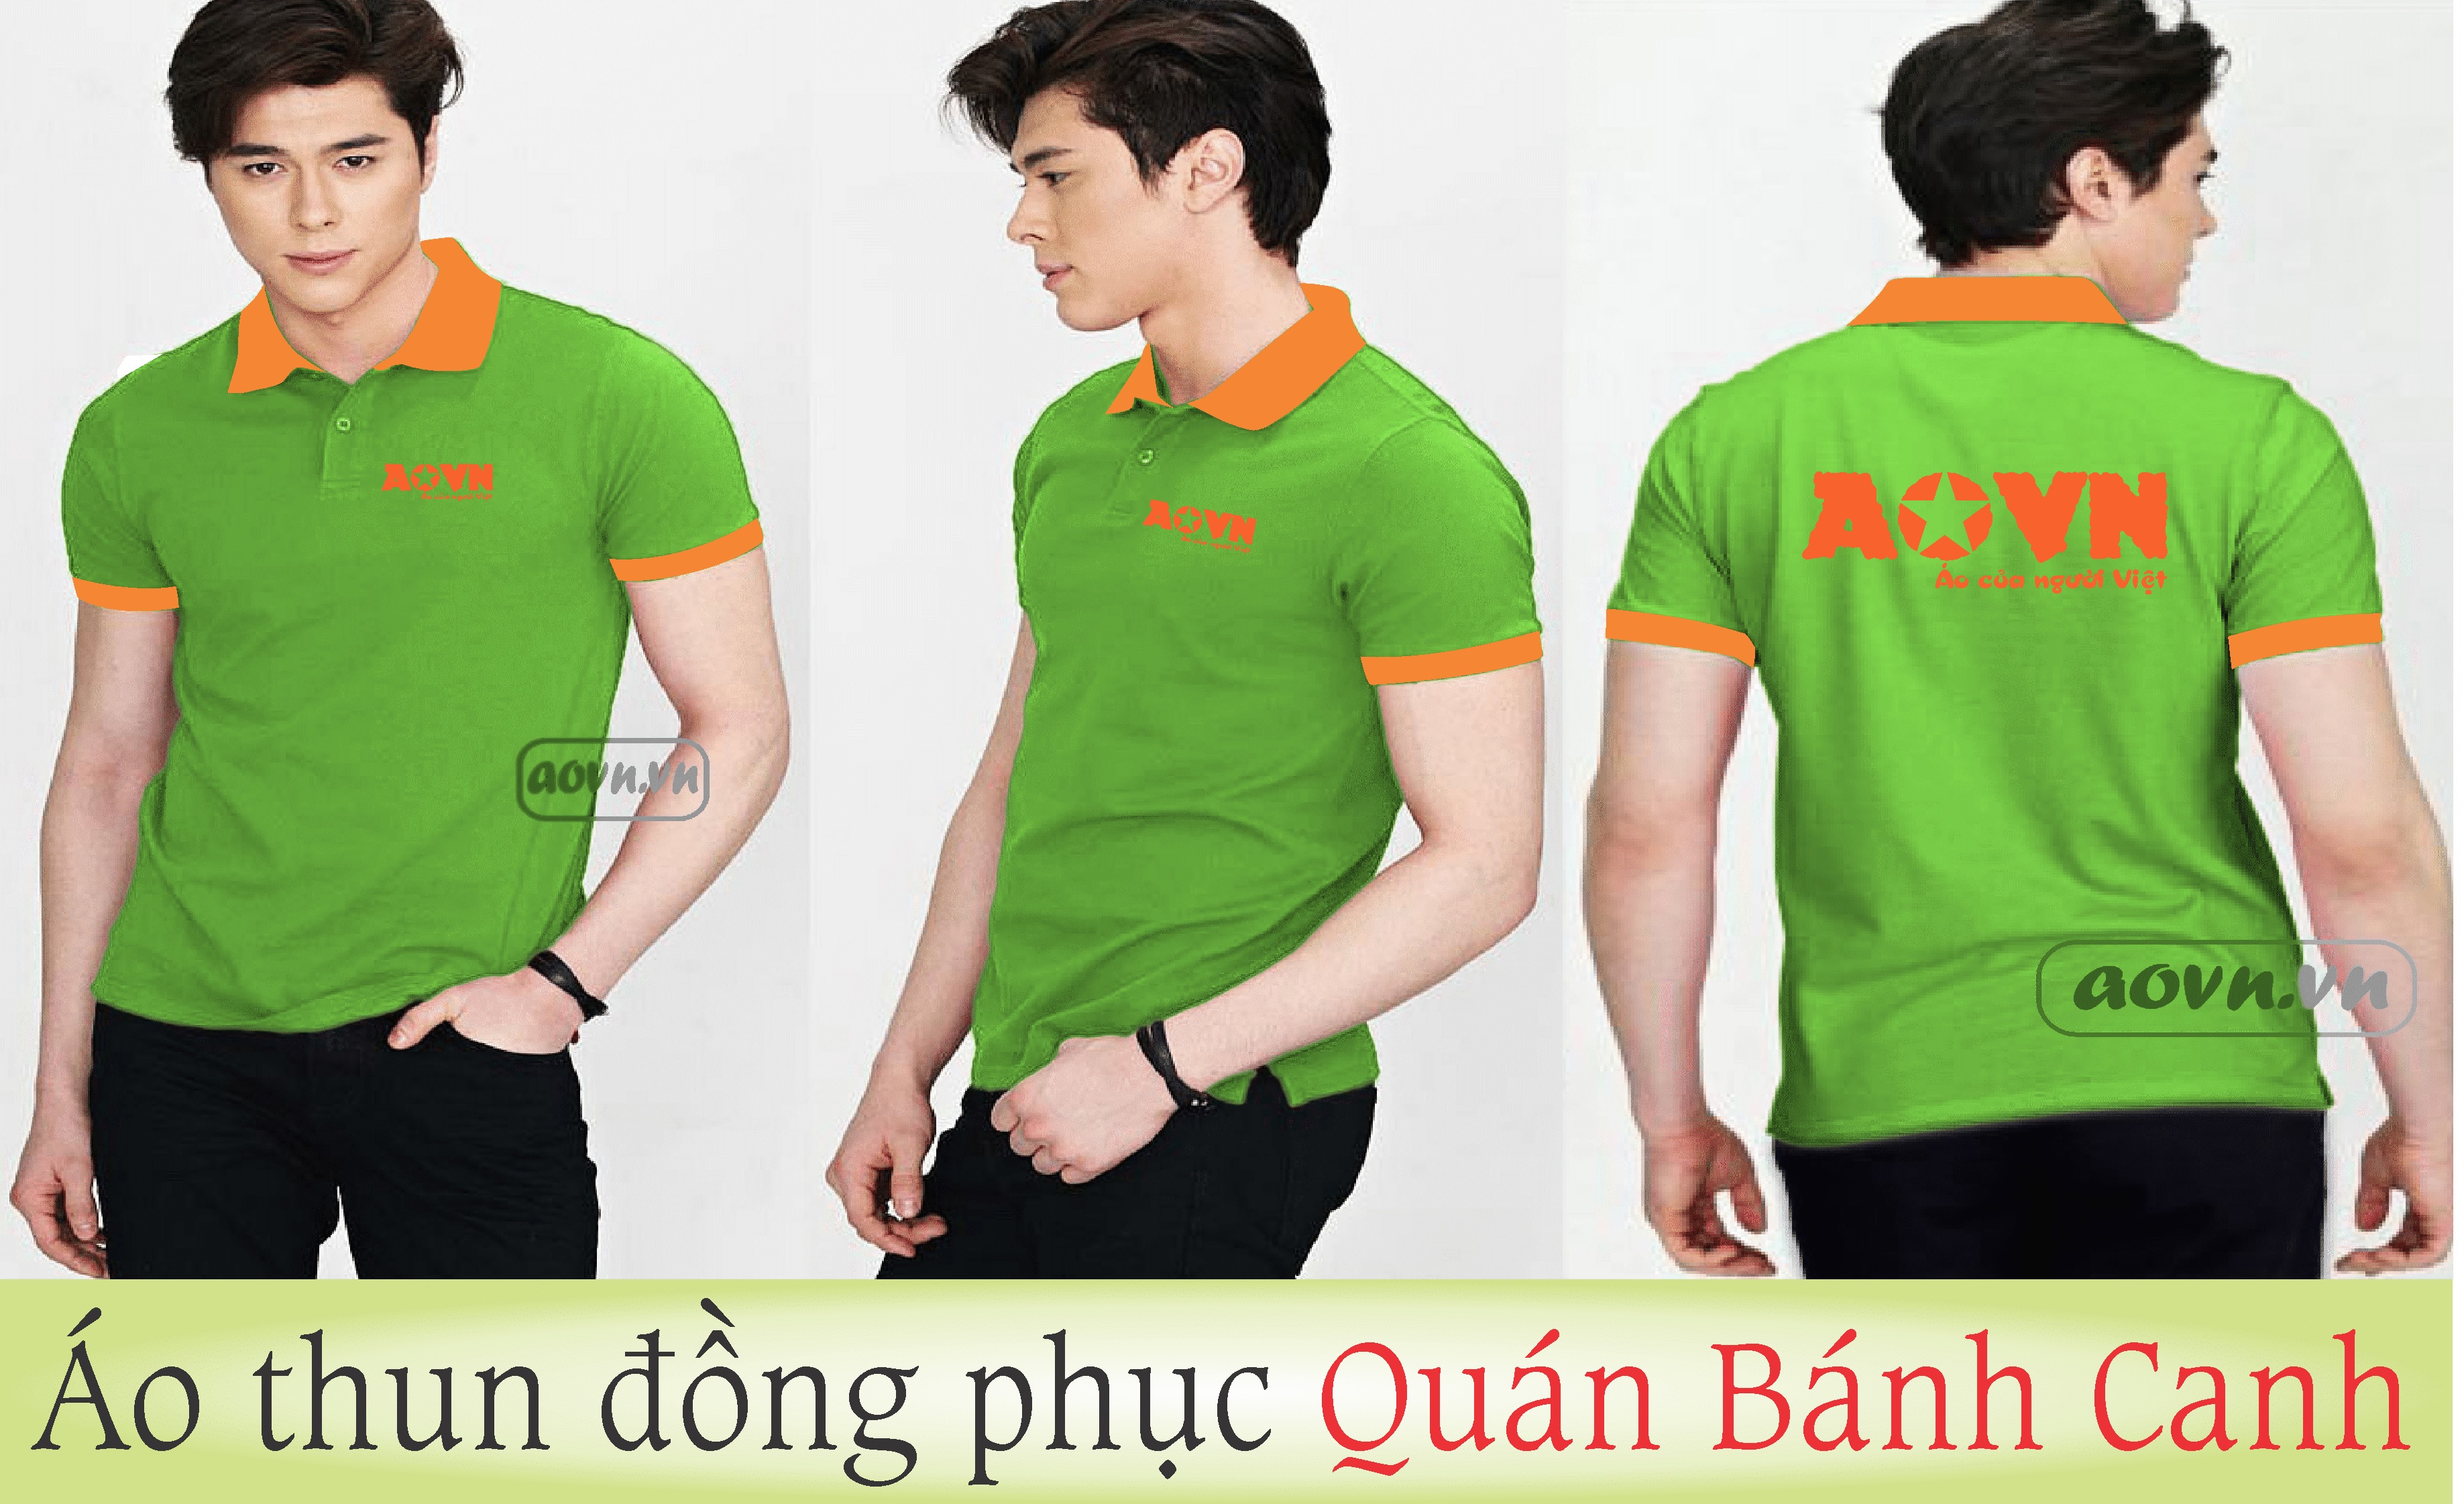 ao-thun-dong-phuc-Quan-Banh-Canh